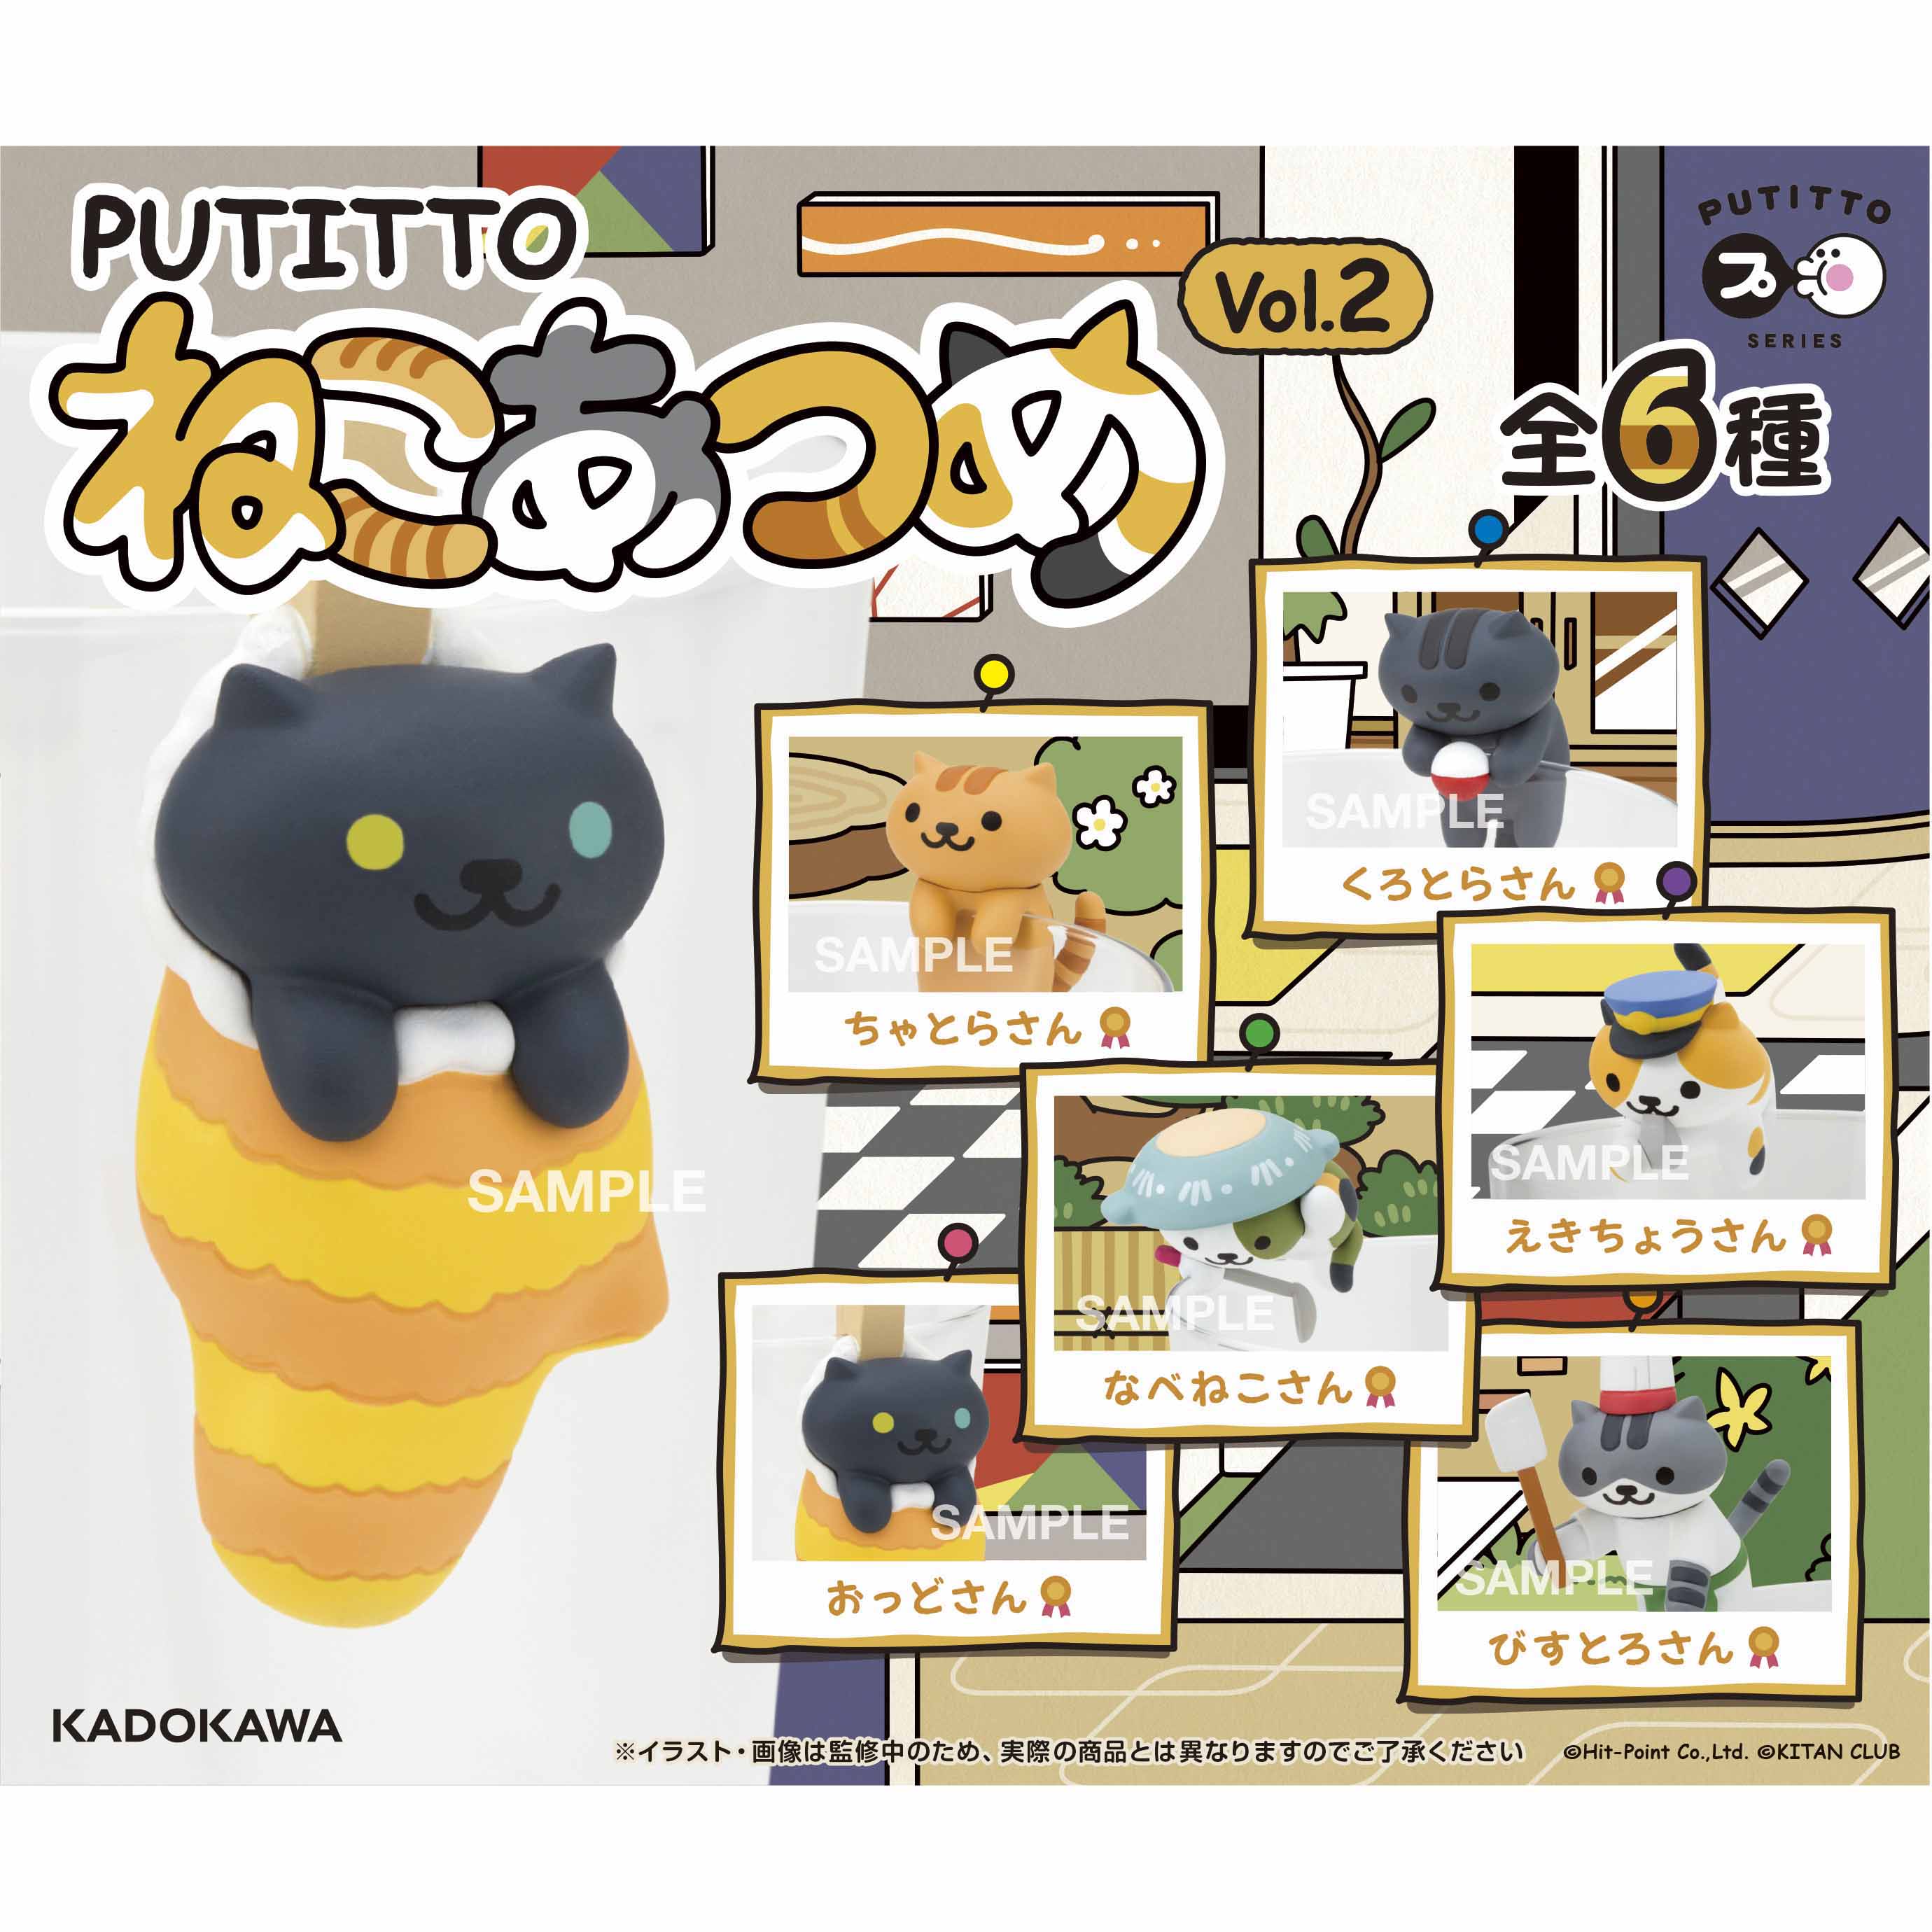 Kadokawa公式ショップ Putitto Series プティットシリーズ Putitto ねこあつめ Vol 2 Box 約w105mm H80mm D5mm グッズ カドカワストア オリジナル特典 本 関連グッズ Blu Ray Dvd Cd